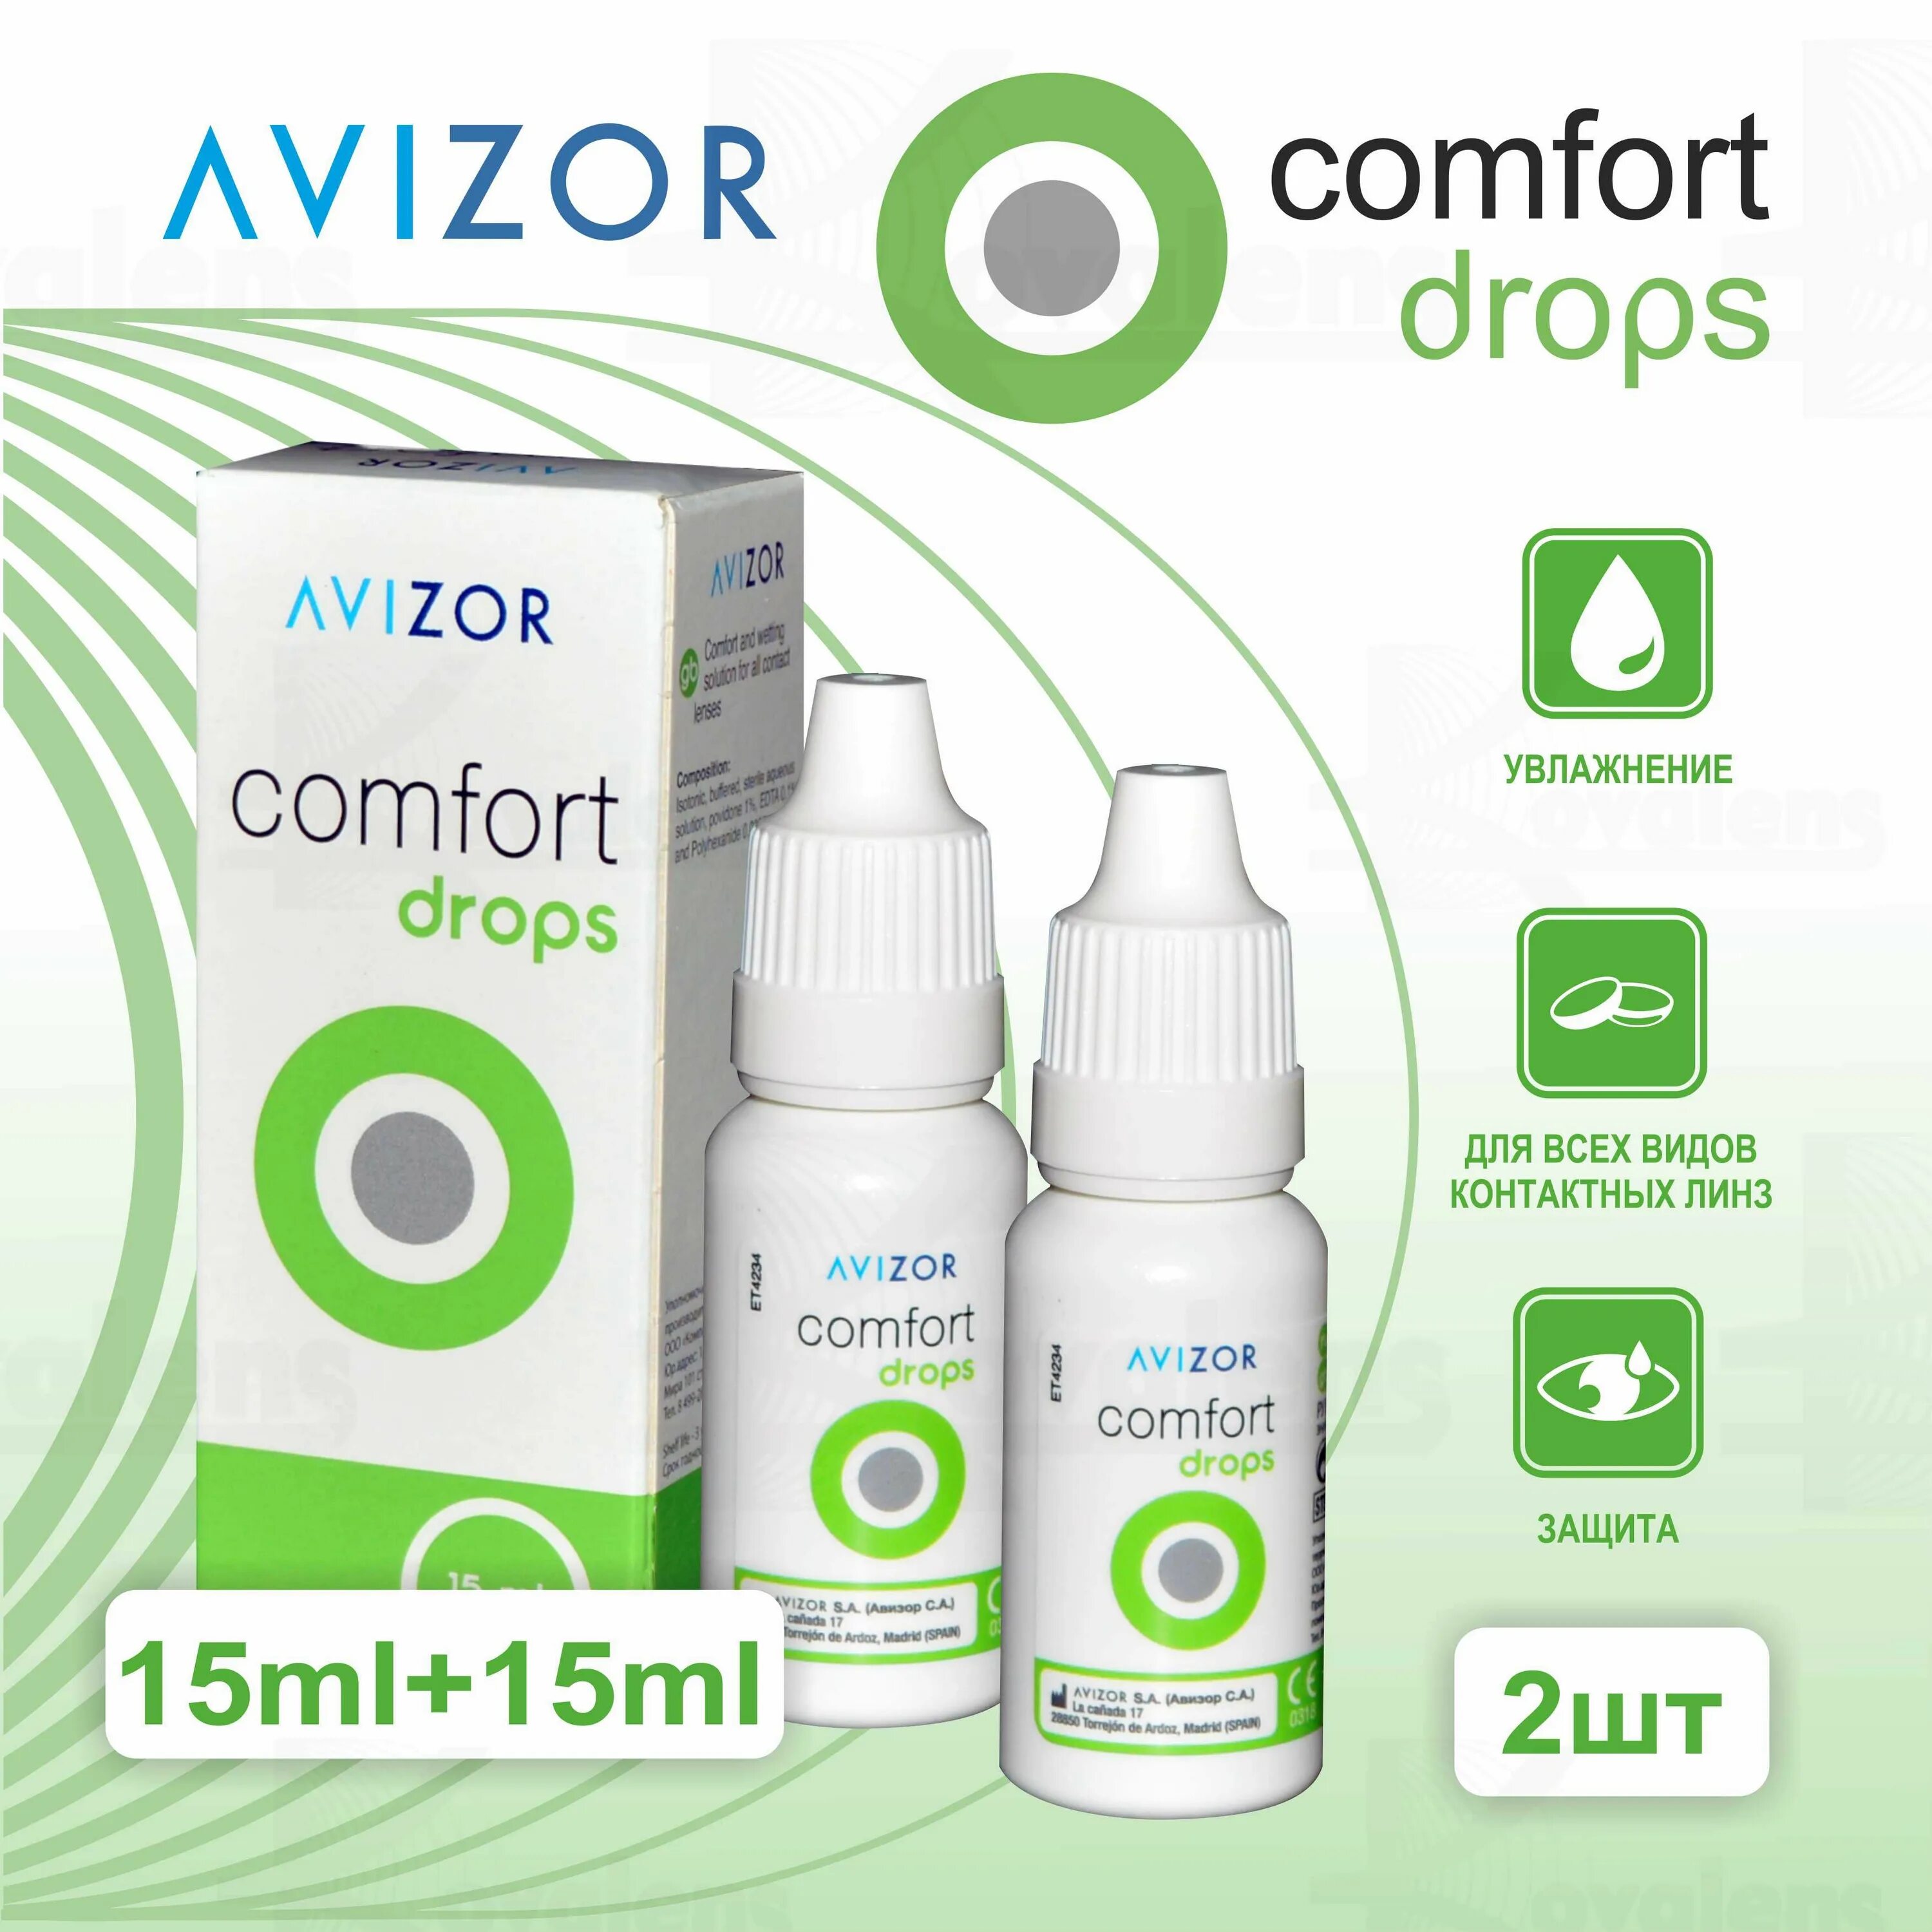 Avizor Comfort Drops. Avizor Comfort Drops 15ml. Avizor Comfort Drops капли. Авизор комфорт Дропс капли глазные, 15 мл Авизор.